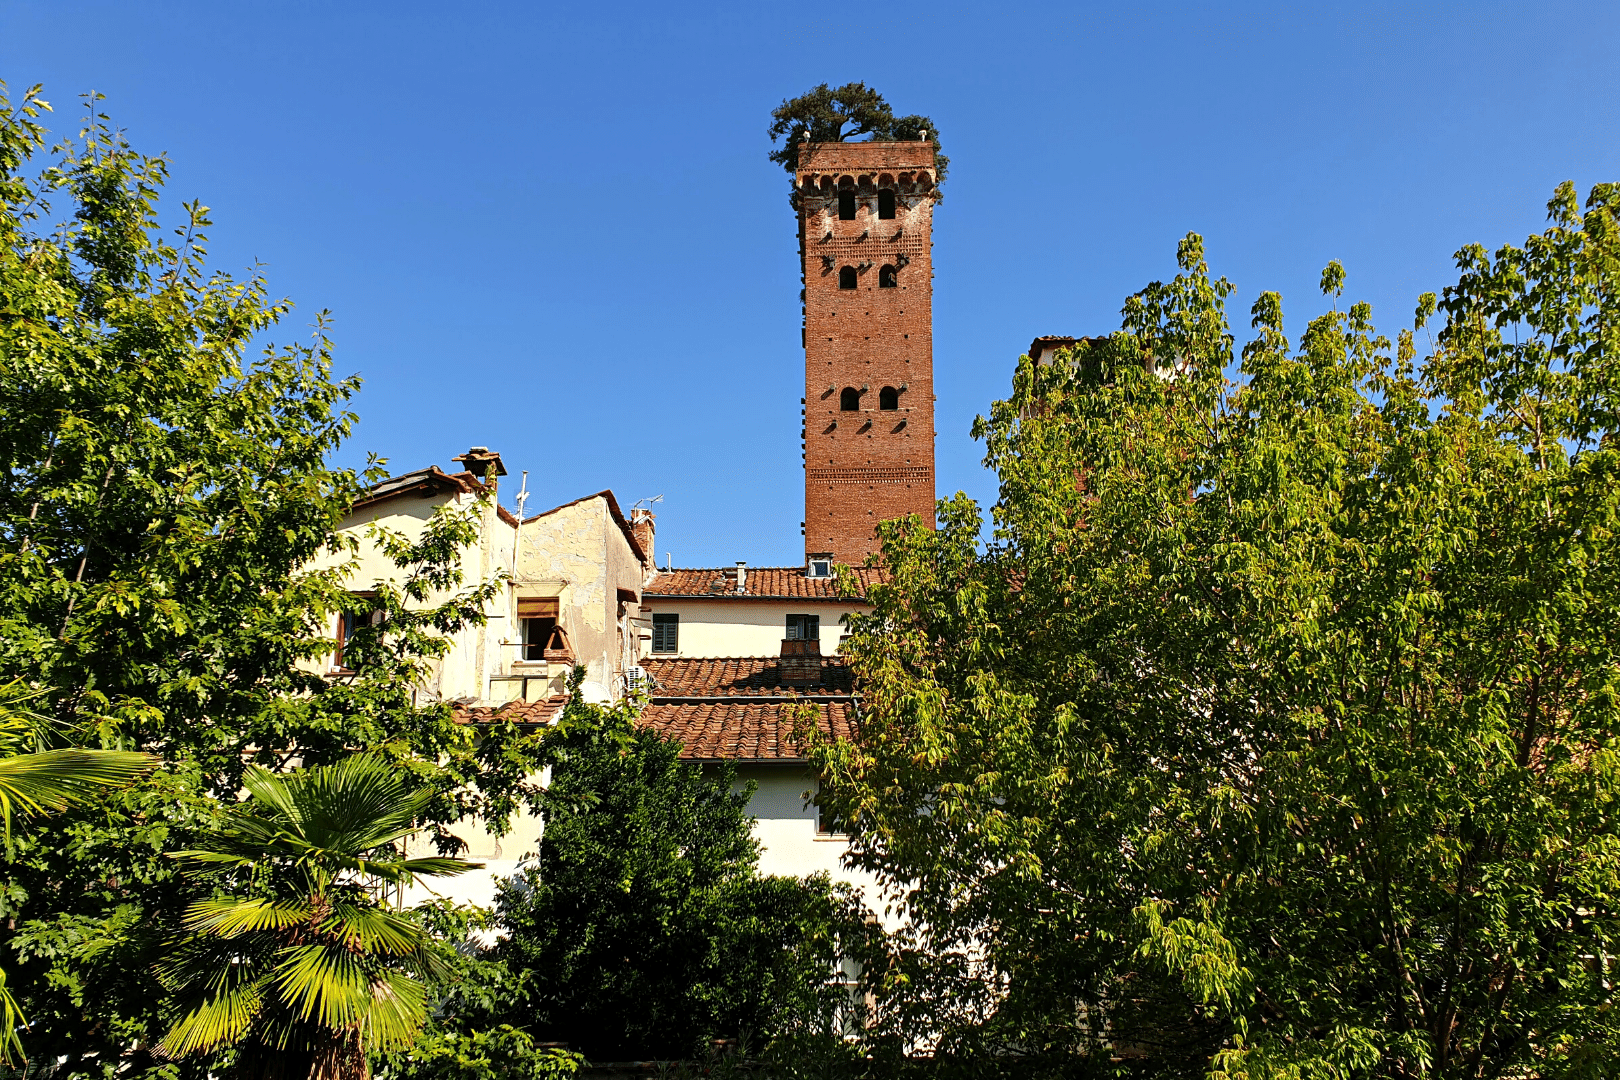 2Italia Experiences. Giunigi Tower Lucca